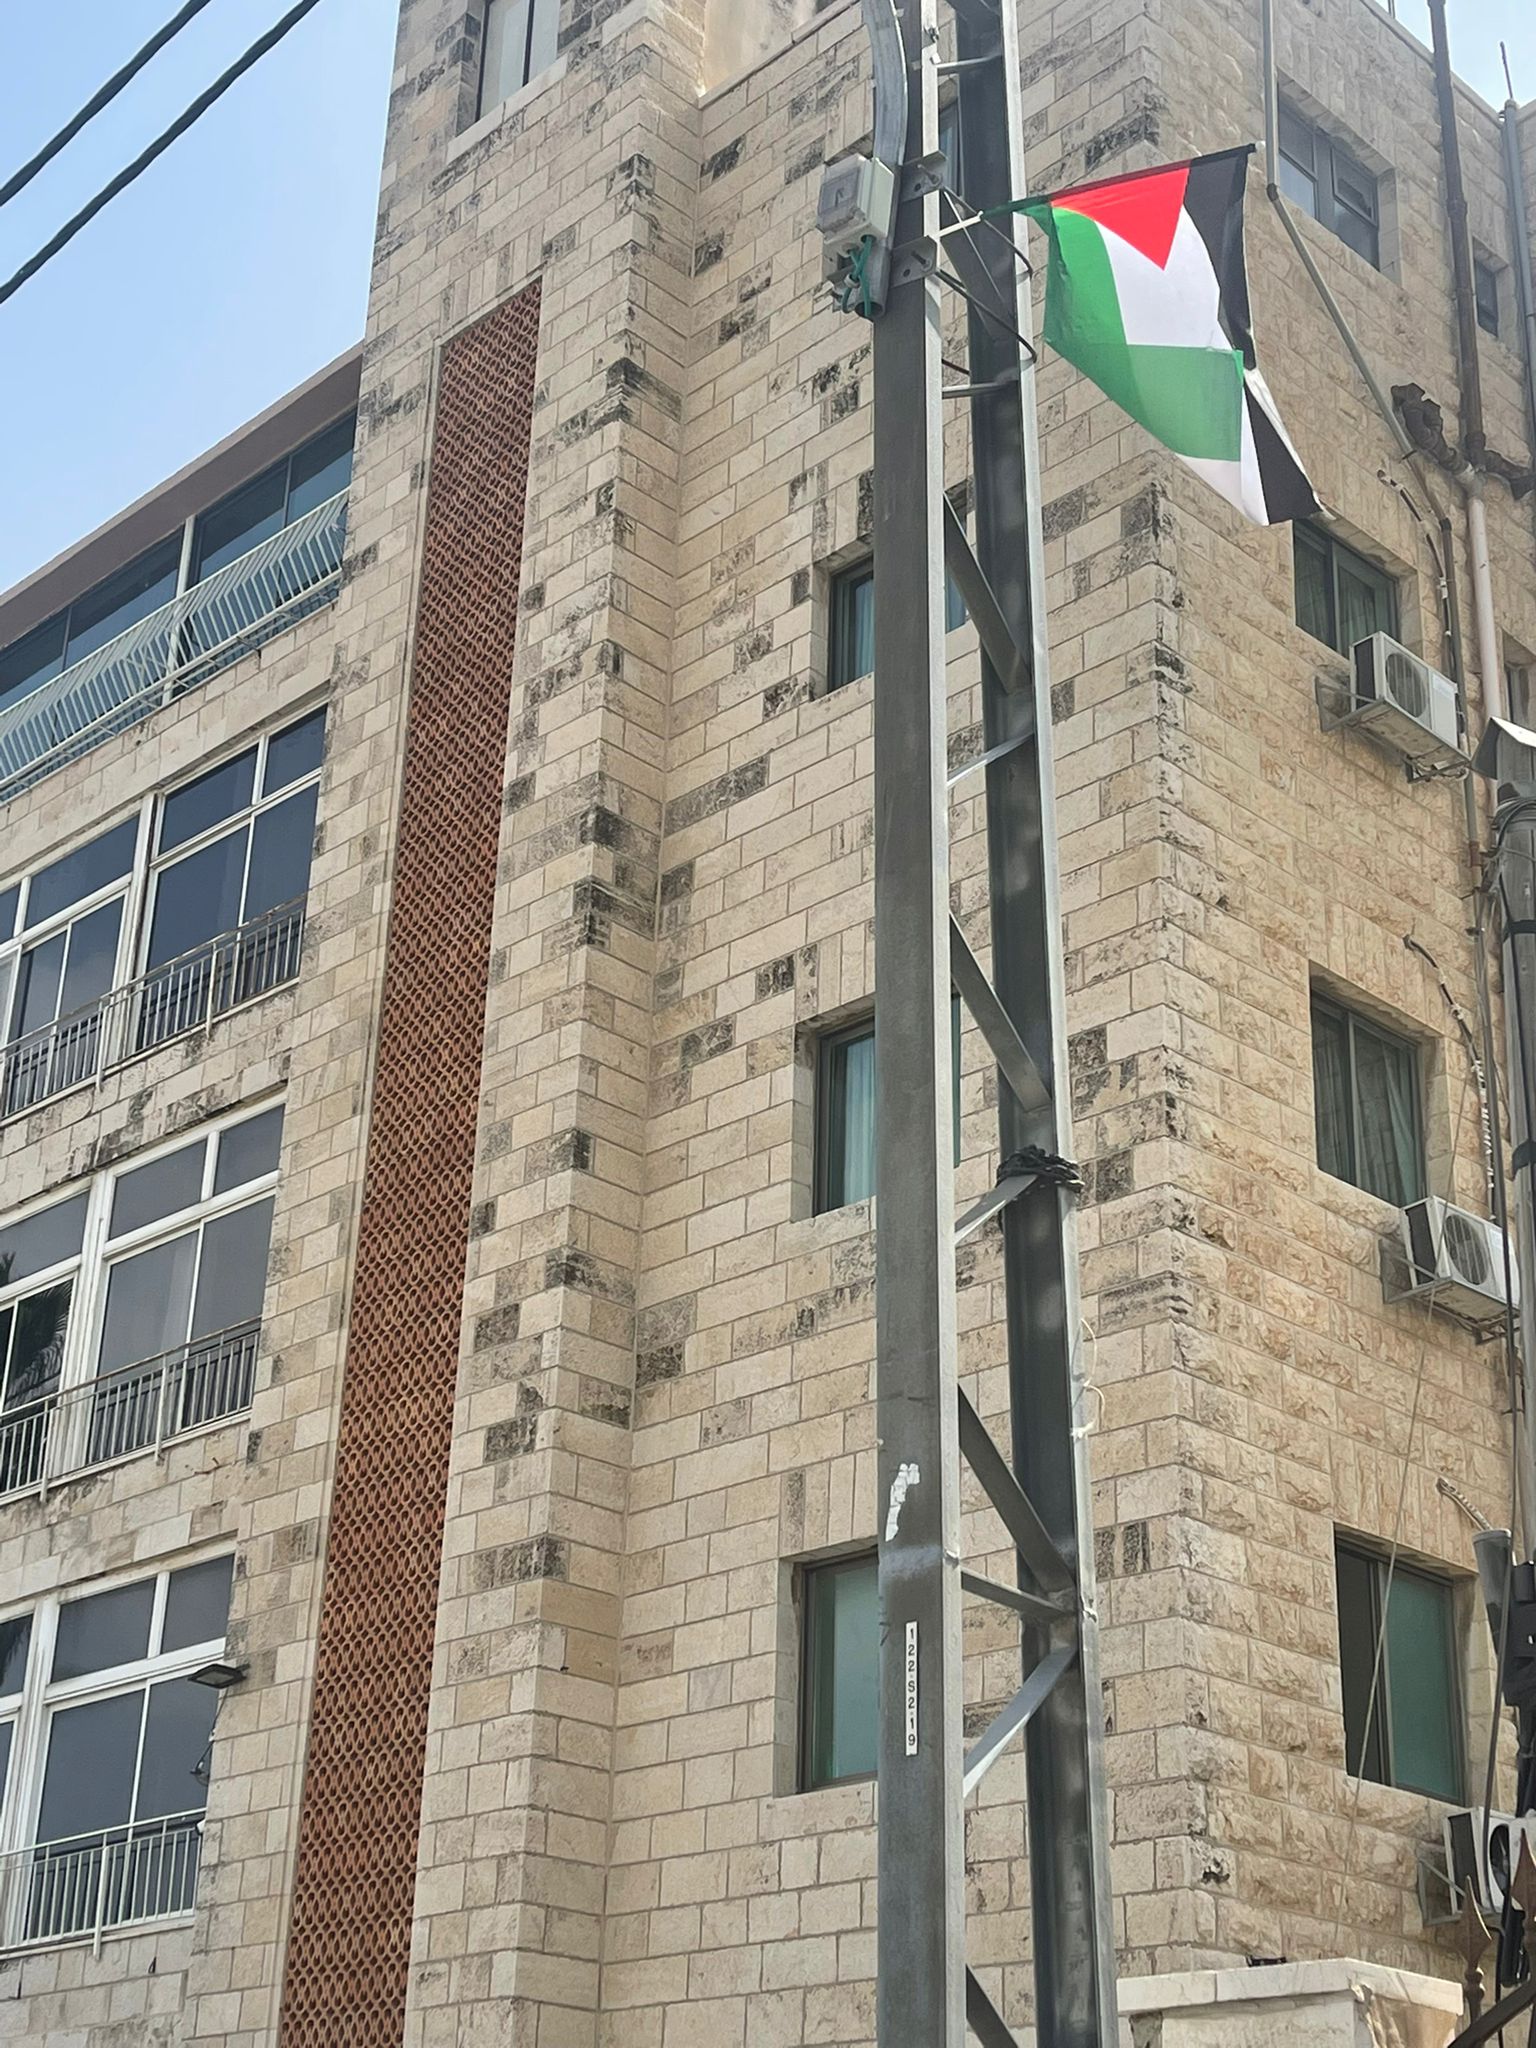  رفع أعلام فلسطين في حي رأس العامود بالقدس